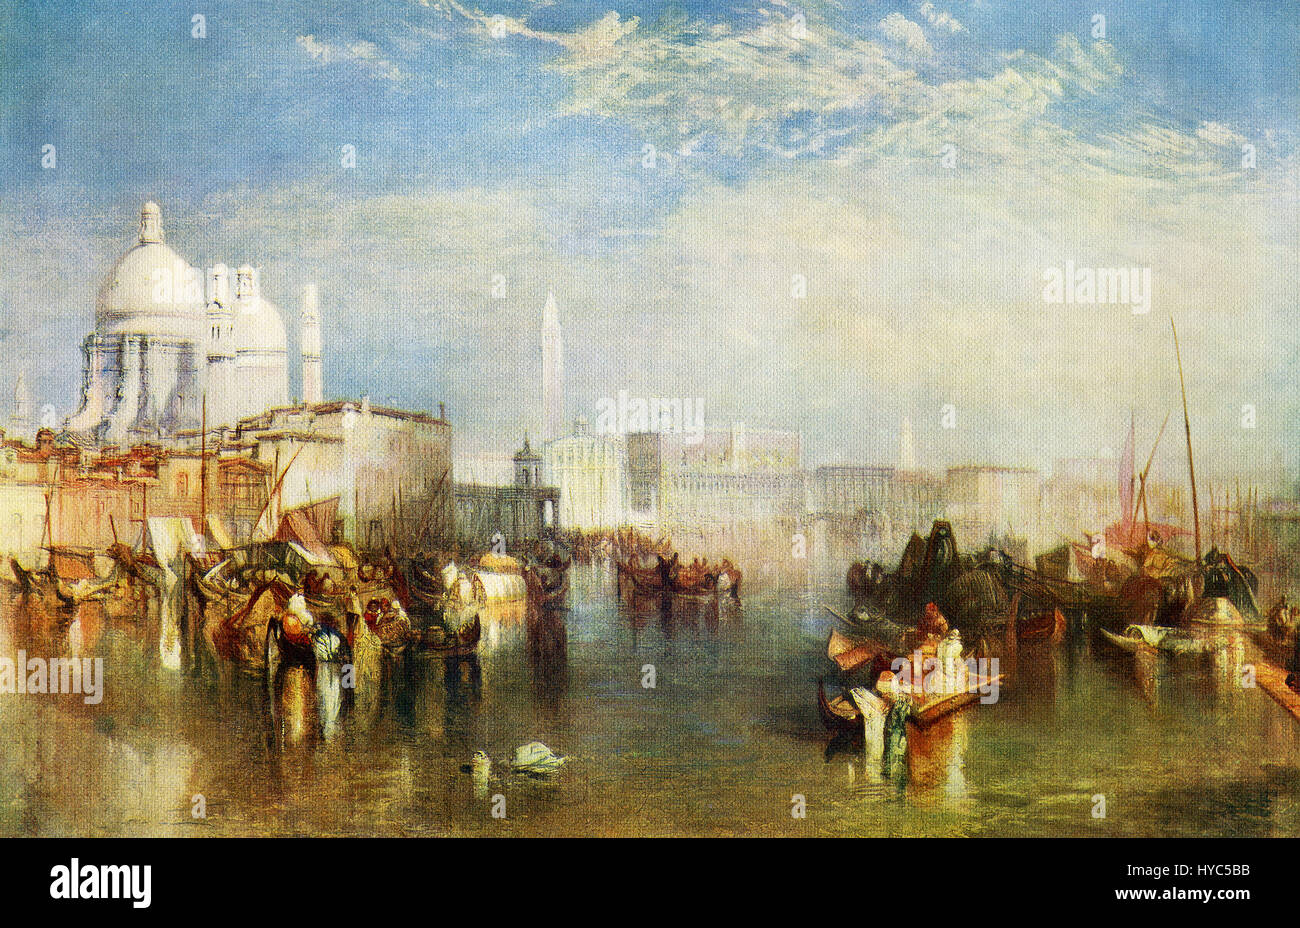 Ce tableau, intitulé Venise, est par l'artiste paysage romantique anglais J.M. W. Turner (1775-1851). Turner est idéal était léger, et son ambition est de peindre le soleil. Il aimait la peinture de la mer et l'eau, surtout si dans la distance quelques belles ville ou pays lui a permis de jouer avec les effets d'ombre et de soleil. Banque D'Images